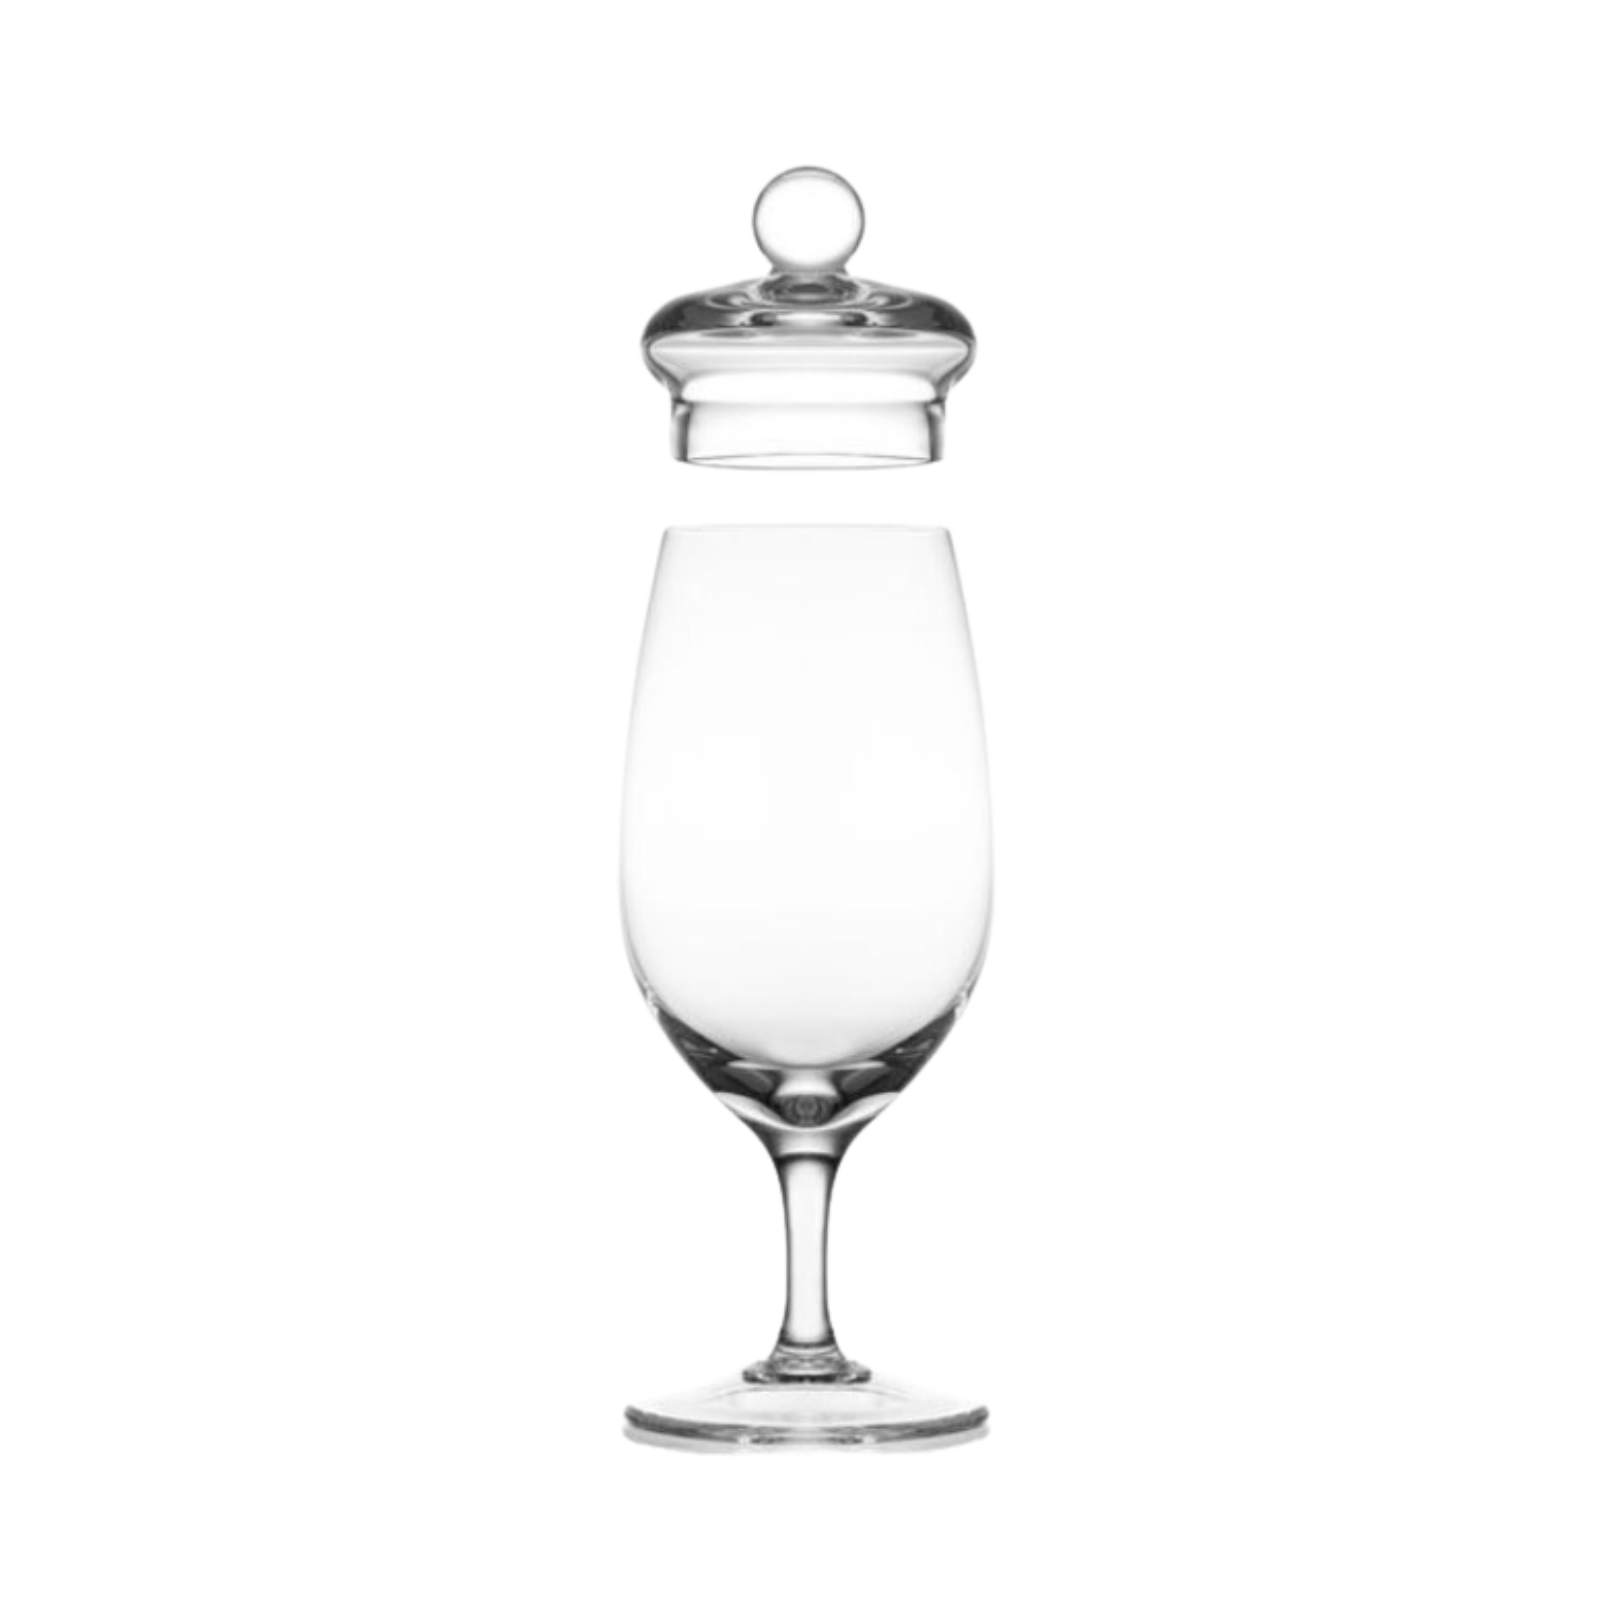 Amber Handmade Whisky Nosing & Tasting Glass G200